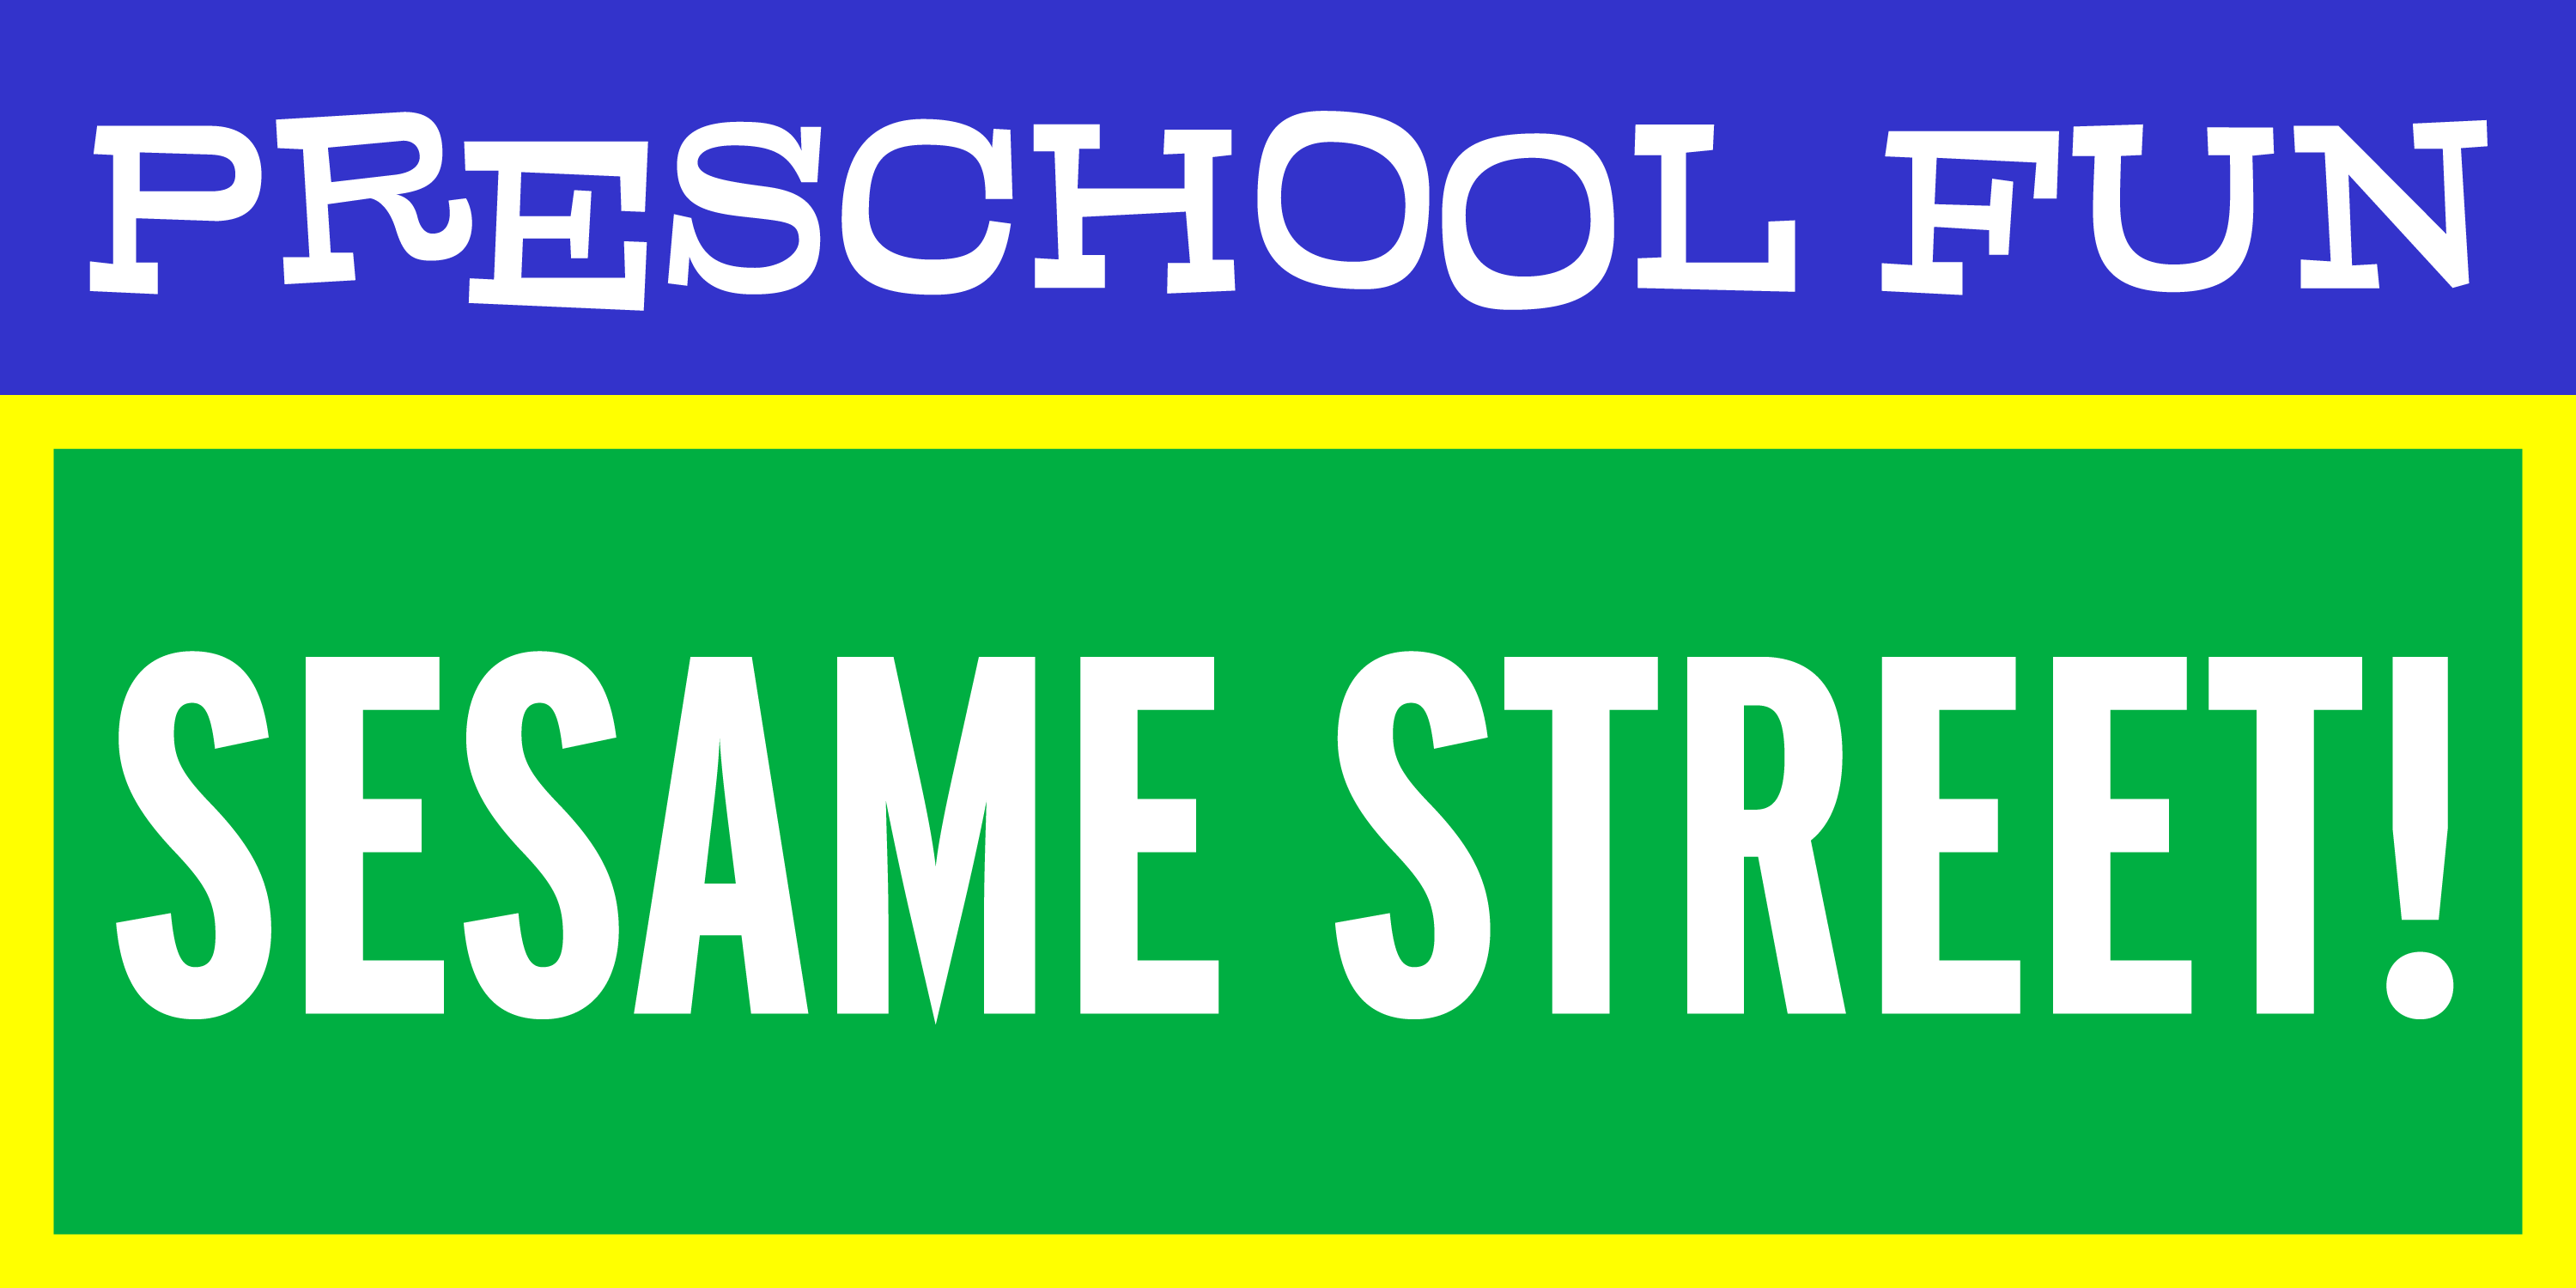 Preschool Fun: Sesame Street!